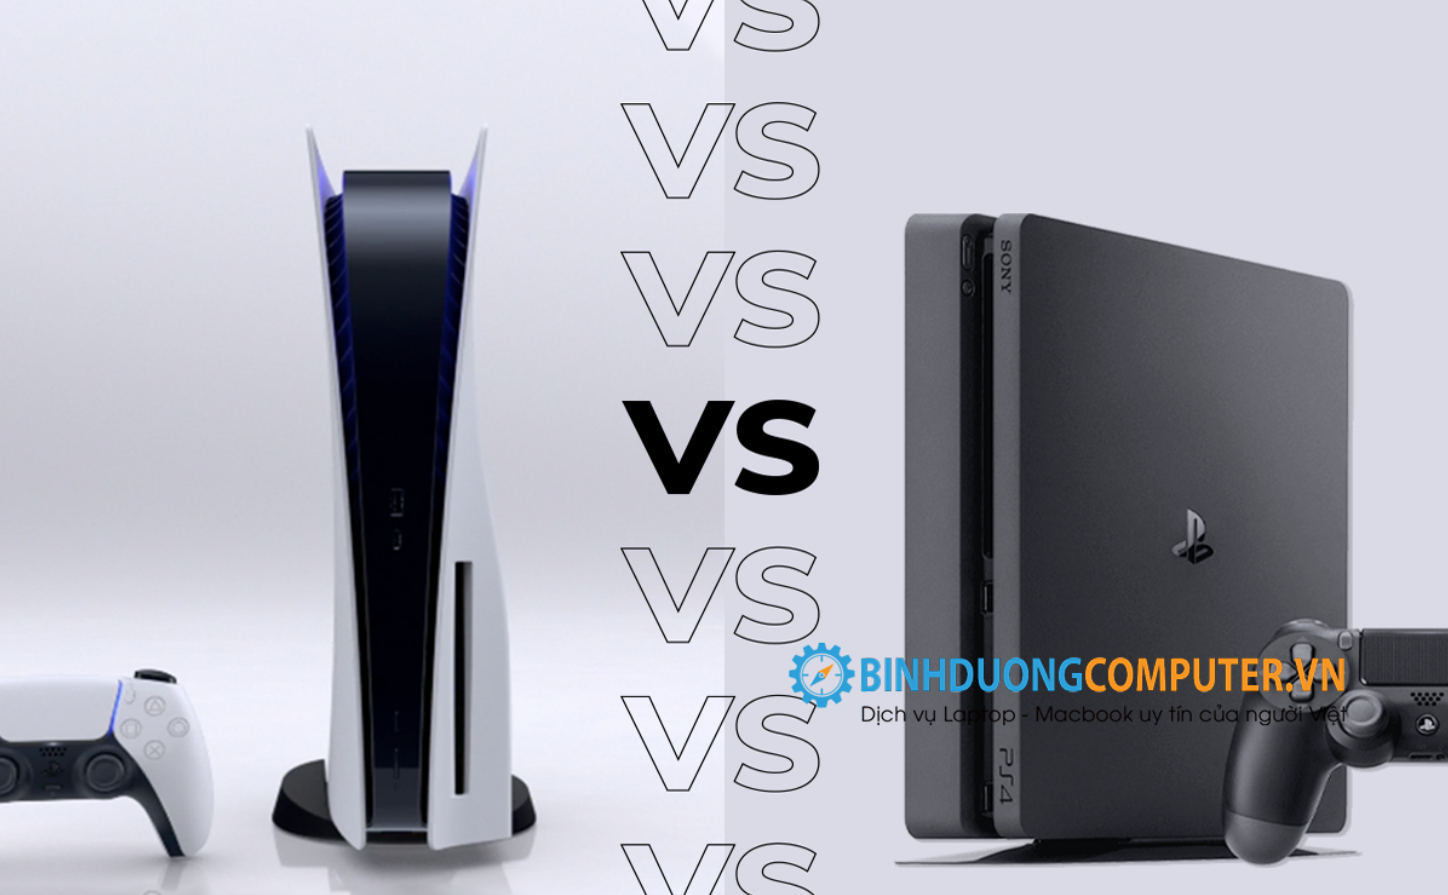 PS4 vs PS5